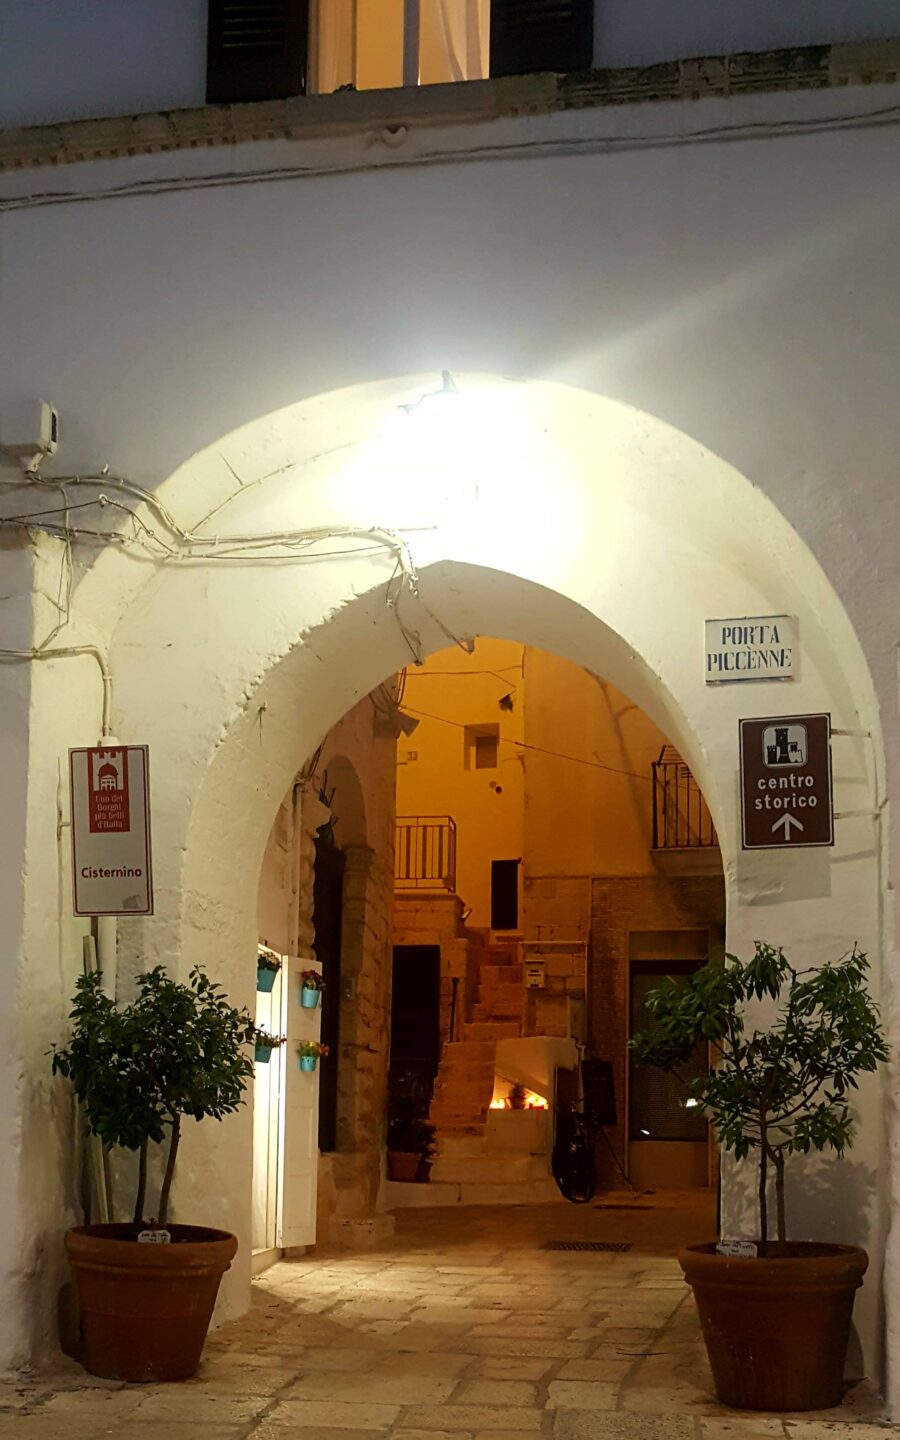 Porta d'ingresso al centro storico di Cisternino